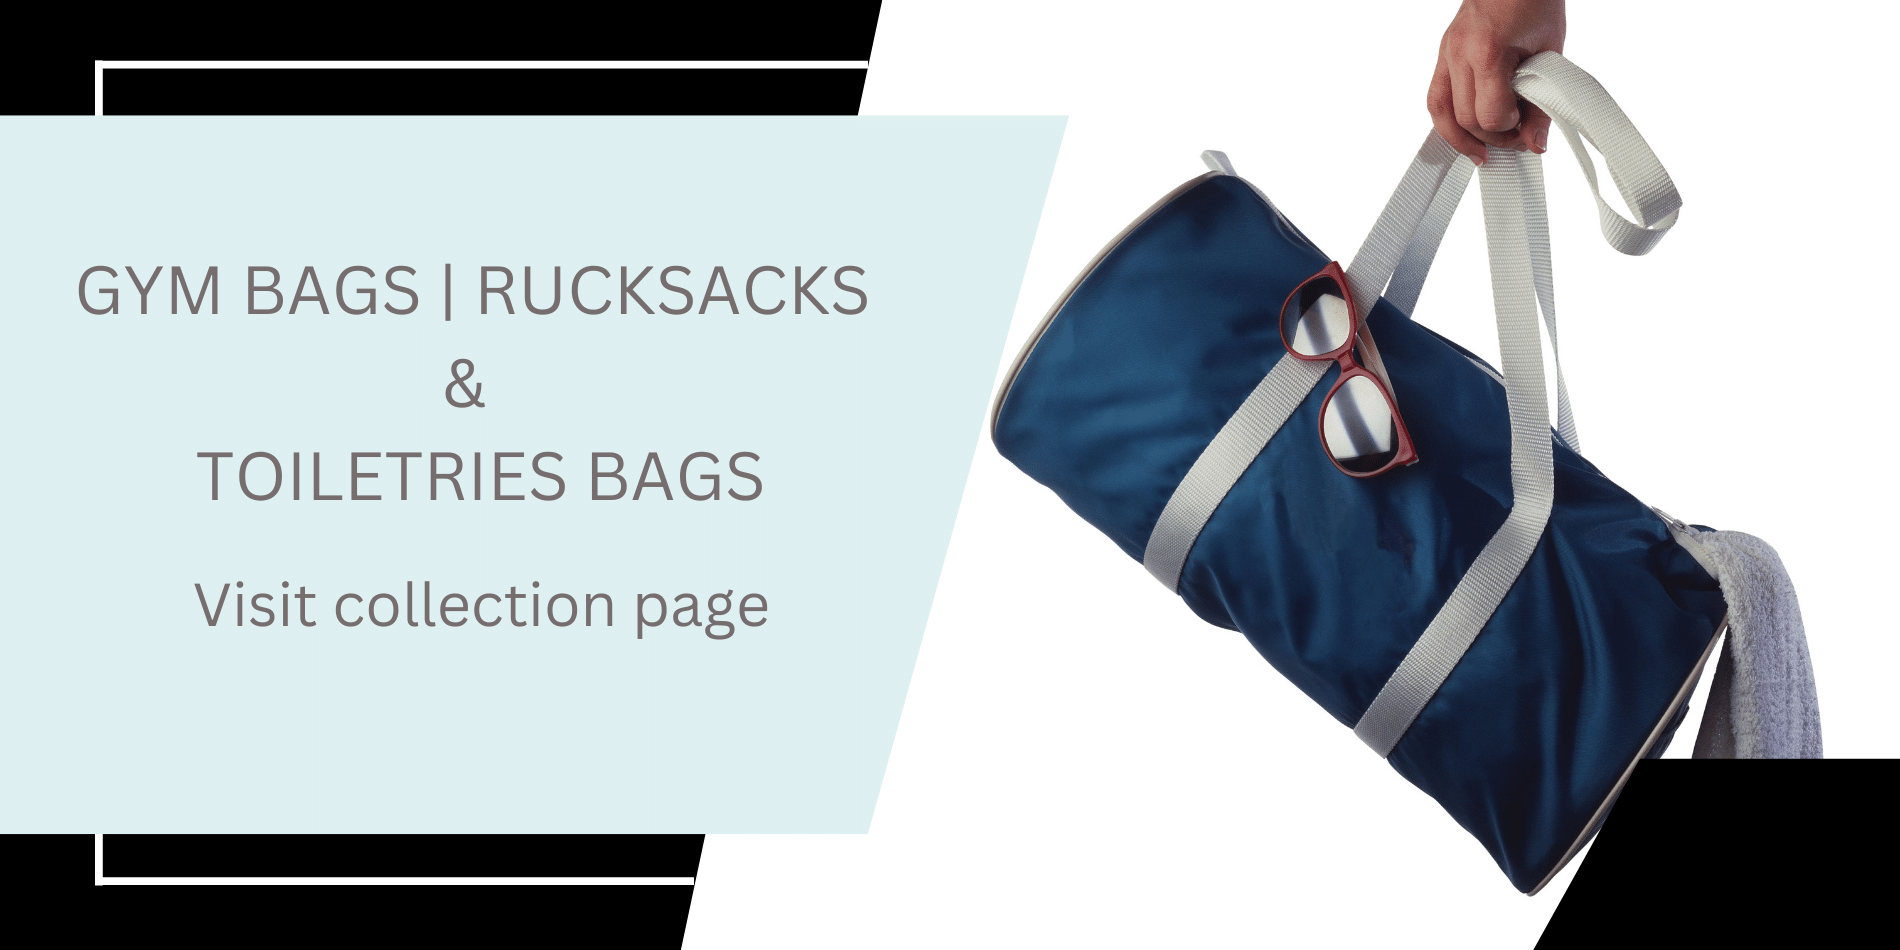 Gym bags, rucksacks, toiletries bags, bags , ladies gym bags, Pilates bags, waterproof bags, shoulder bags, sports bags